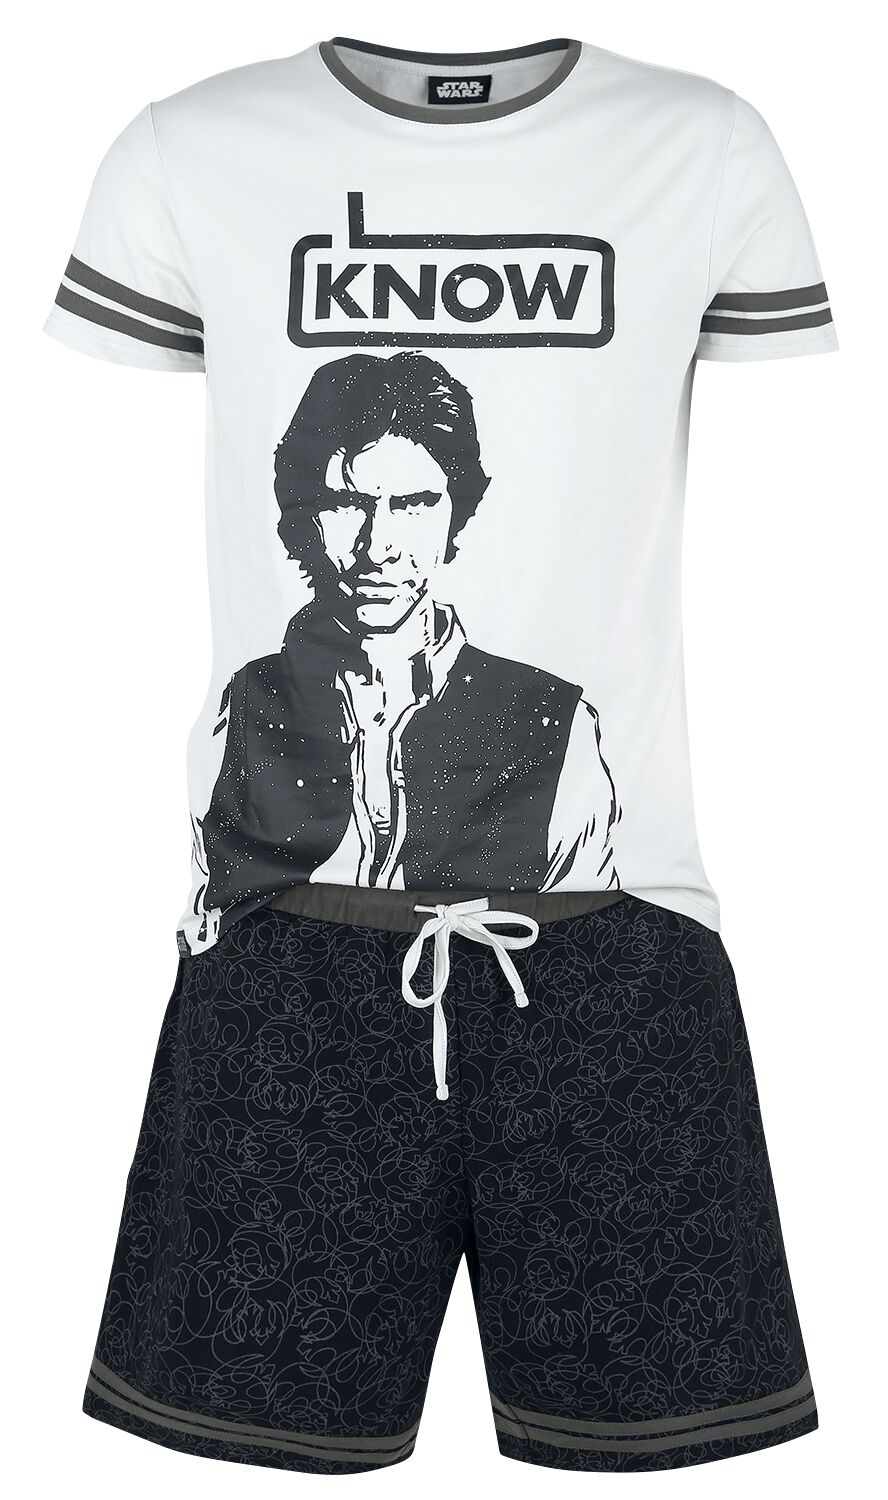 Star Wars Schlafanzug - Han Solo - I Know - S bis XXL - für Männer - Größe XXL - grau/schwarz  - EMP exklusives Merchandise!